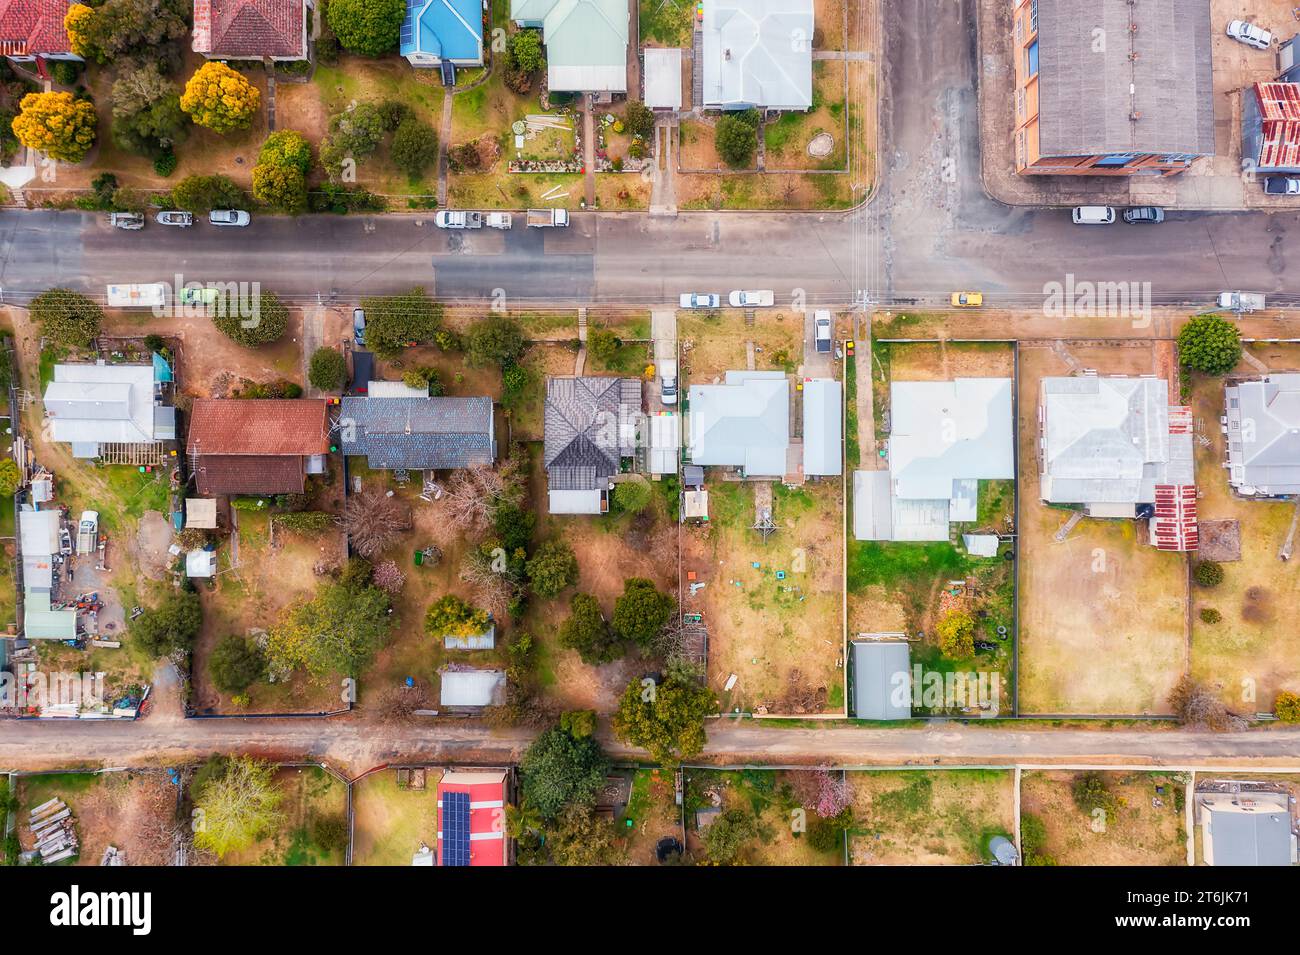 Tipica strada residenziale regionale nella remota cittadina agricola di Gloucester in Australia - vista aerea dall'alto verso il basso su case e abitazioni. Foto Stock